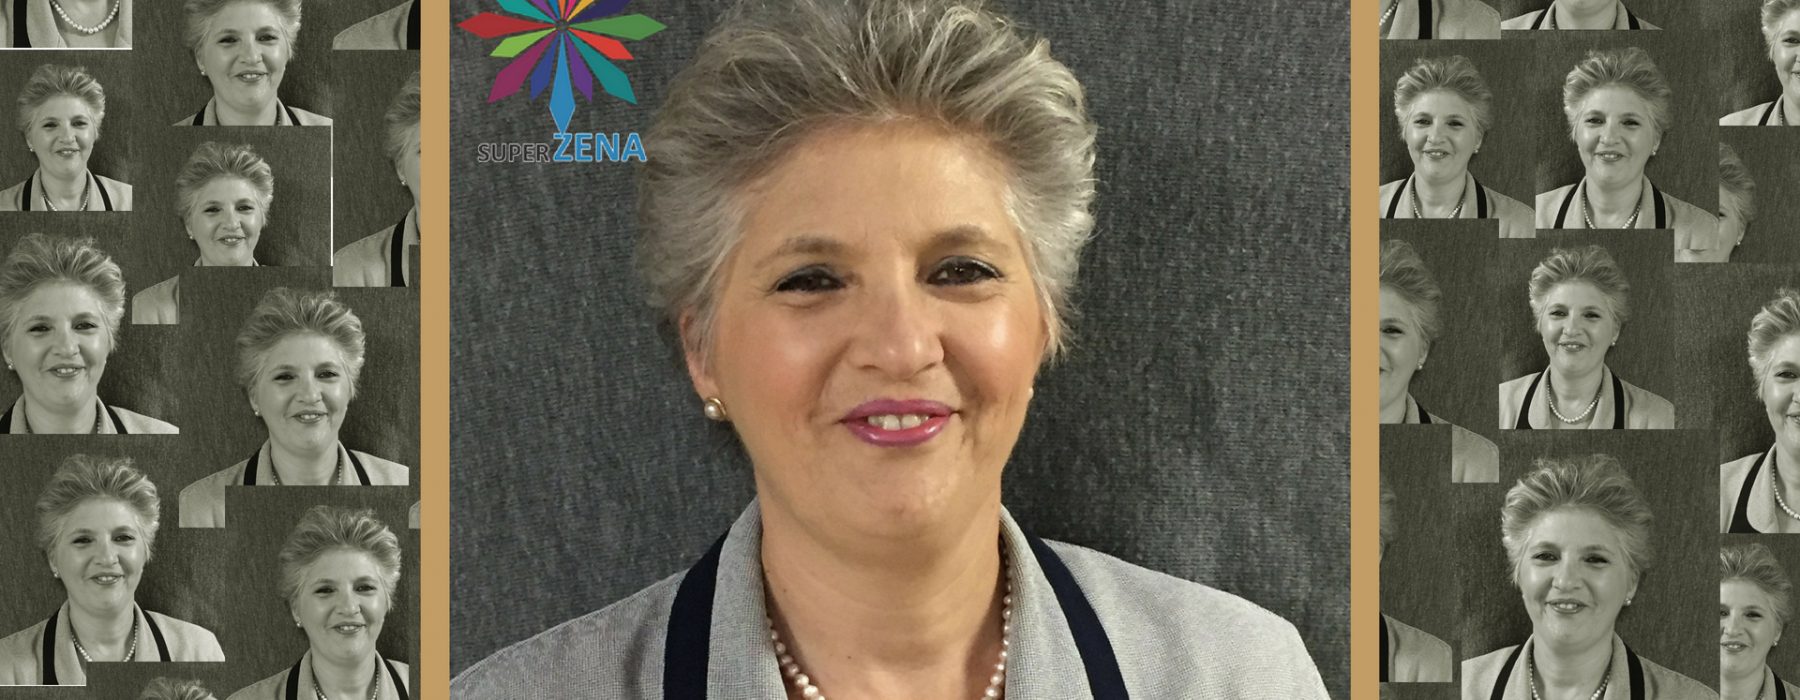 Nakon 26 godina uspješne karijere promijenila je profesiju IREMA SIVČEVIĆ: “Jedina vodilja u toj odluci je bio moj snažan unutrašnji osjećaj”